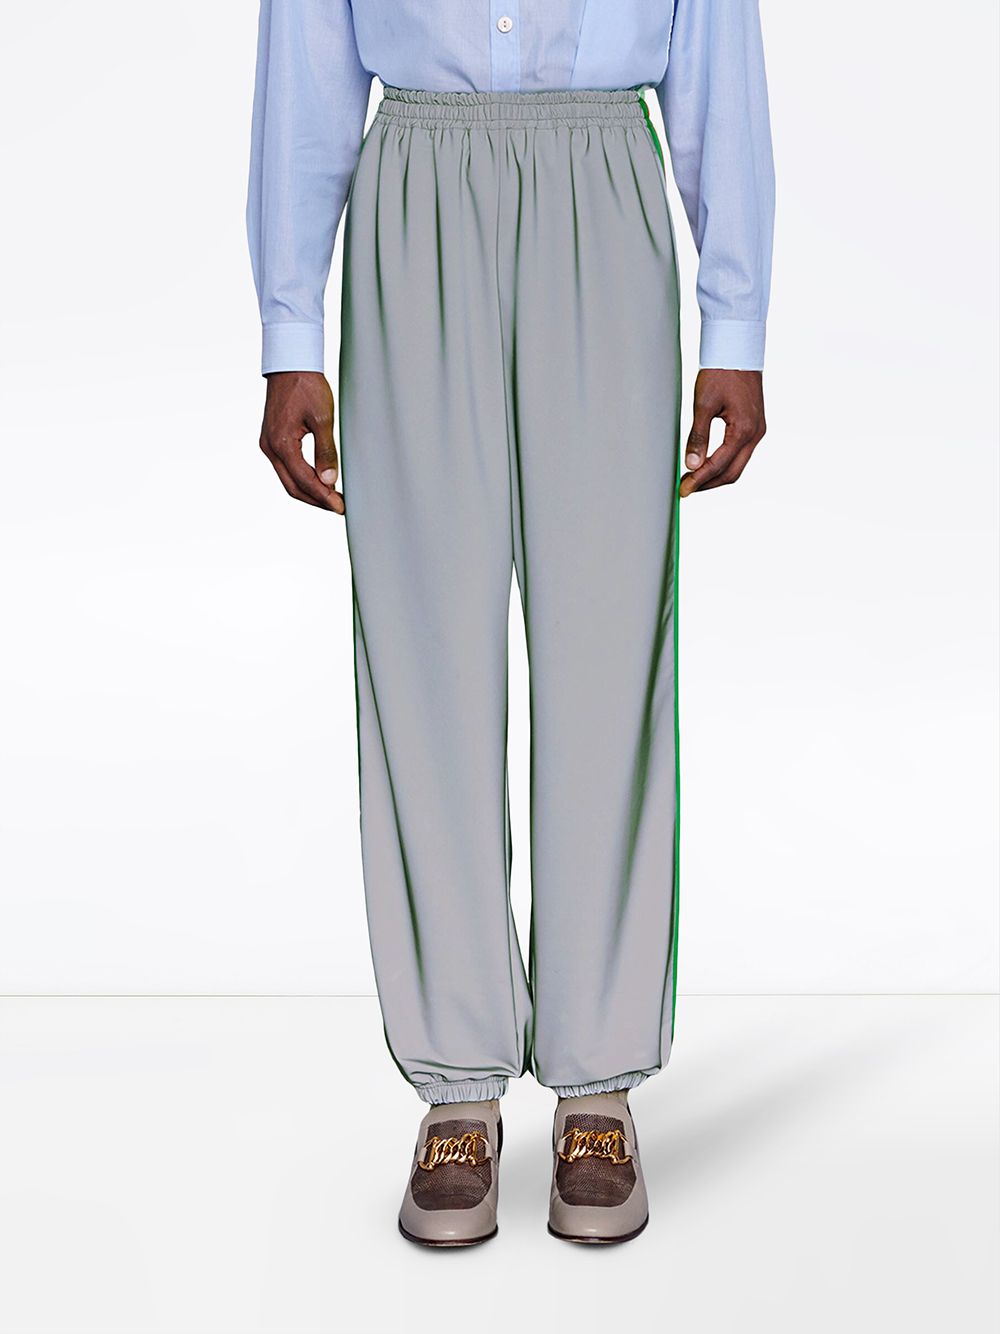 фото Gucci спортивные брюки с отделкой Web на лампасах